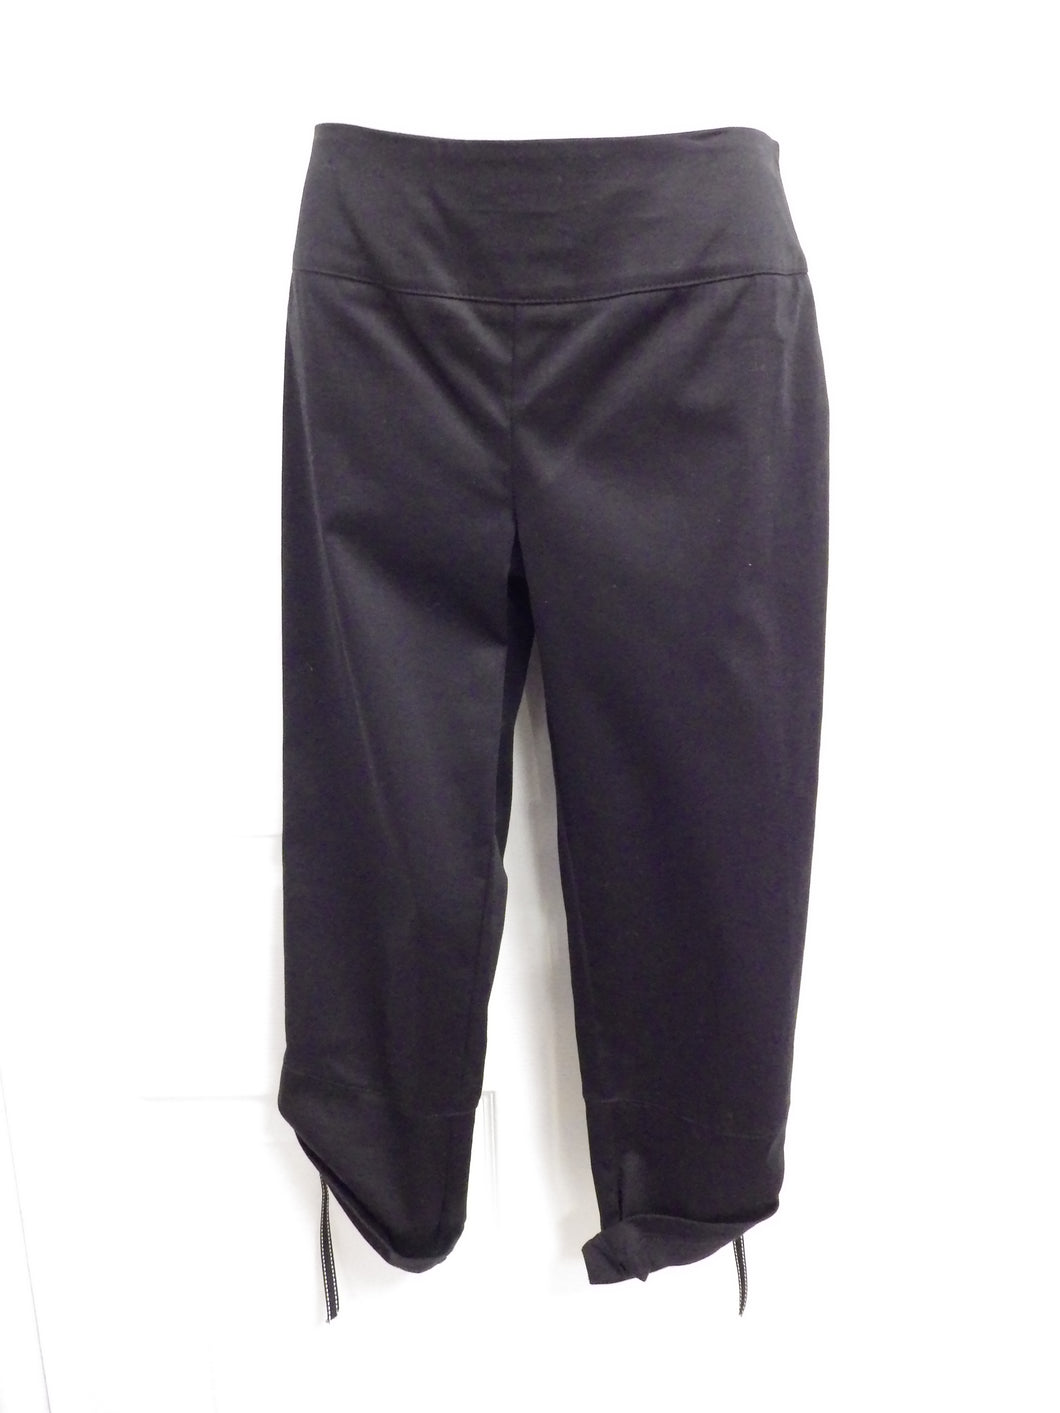 Pantalon capri ajustable noir - Luc Fontaine